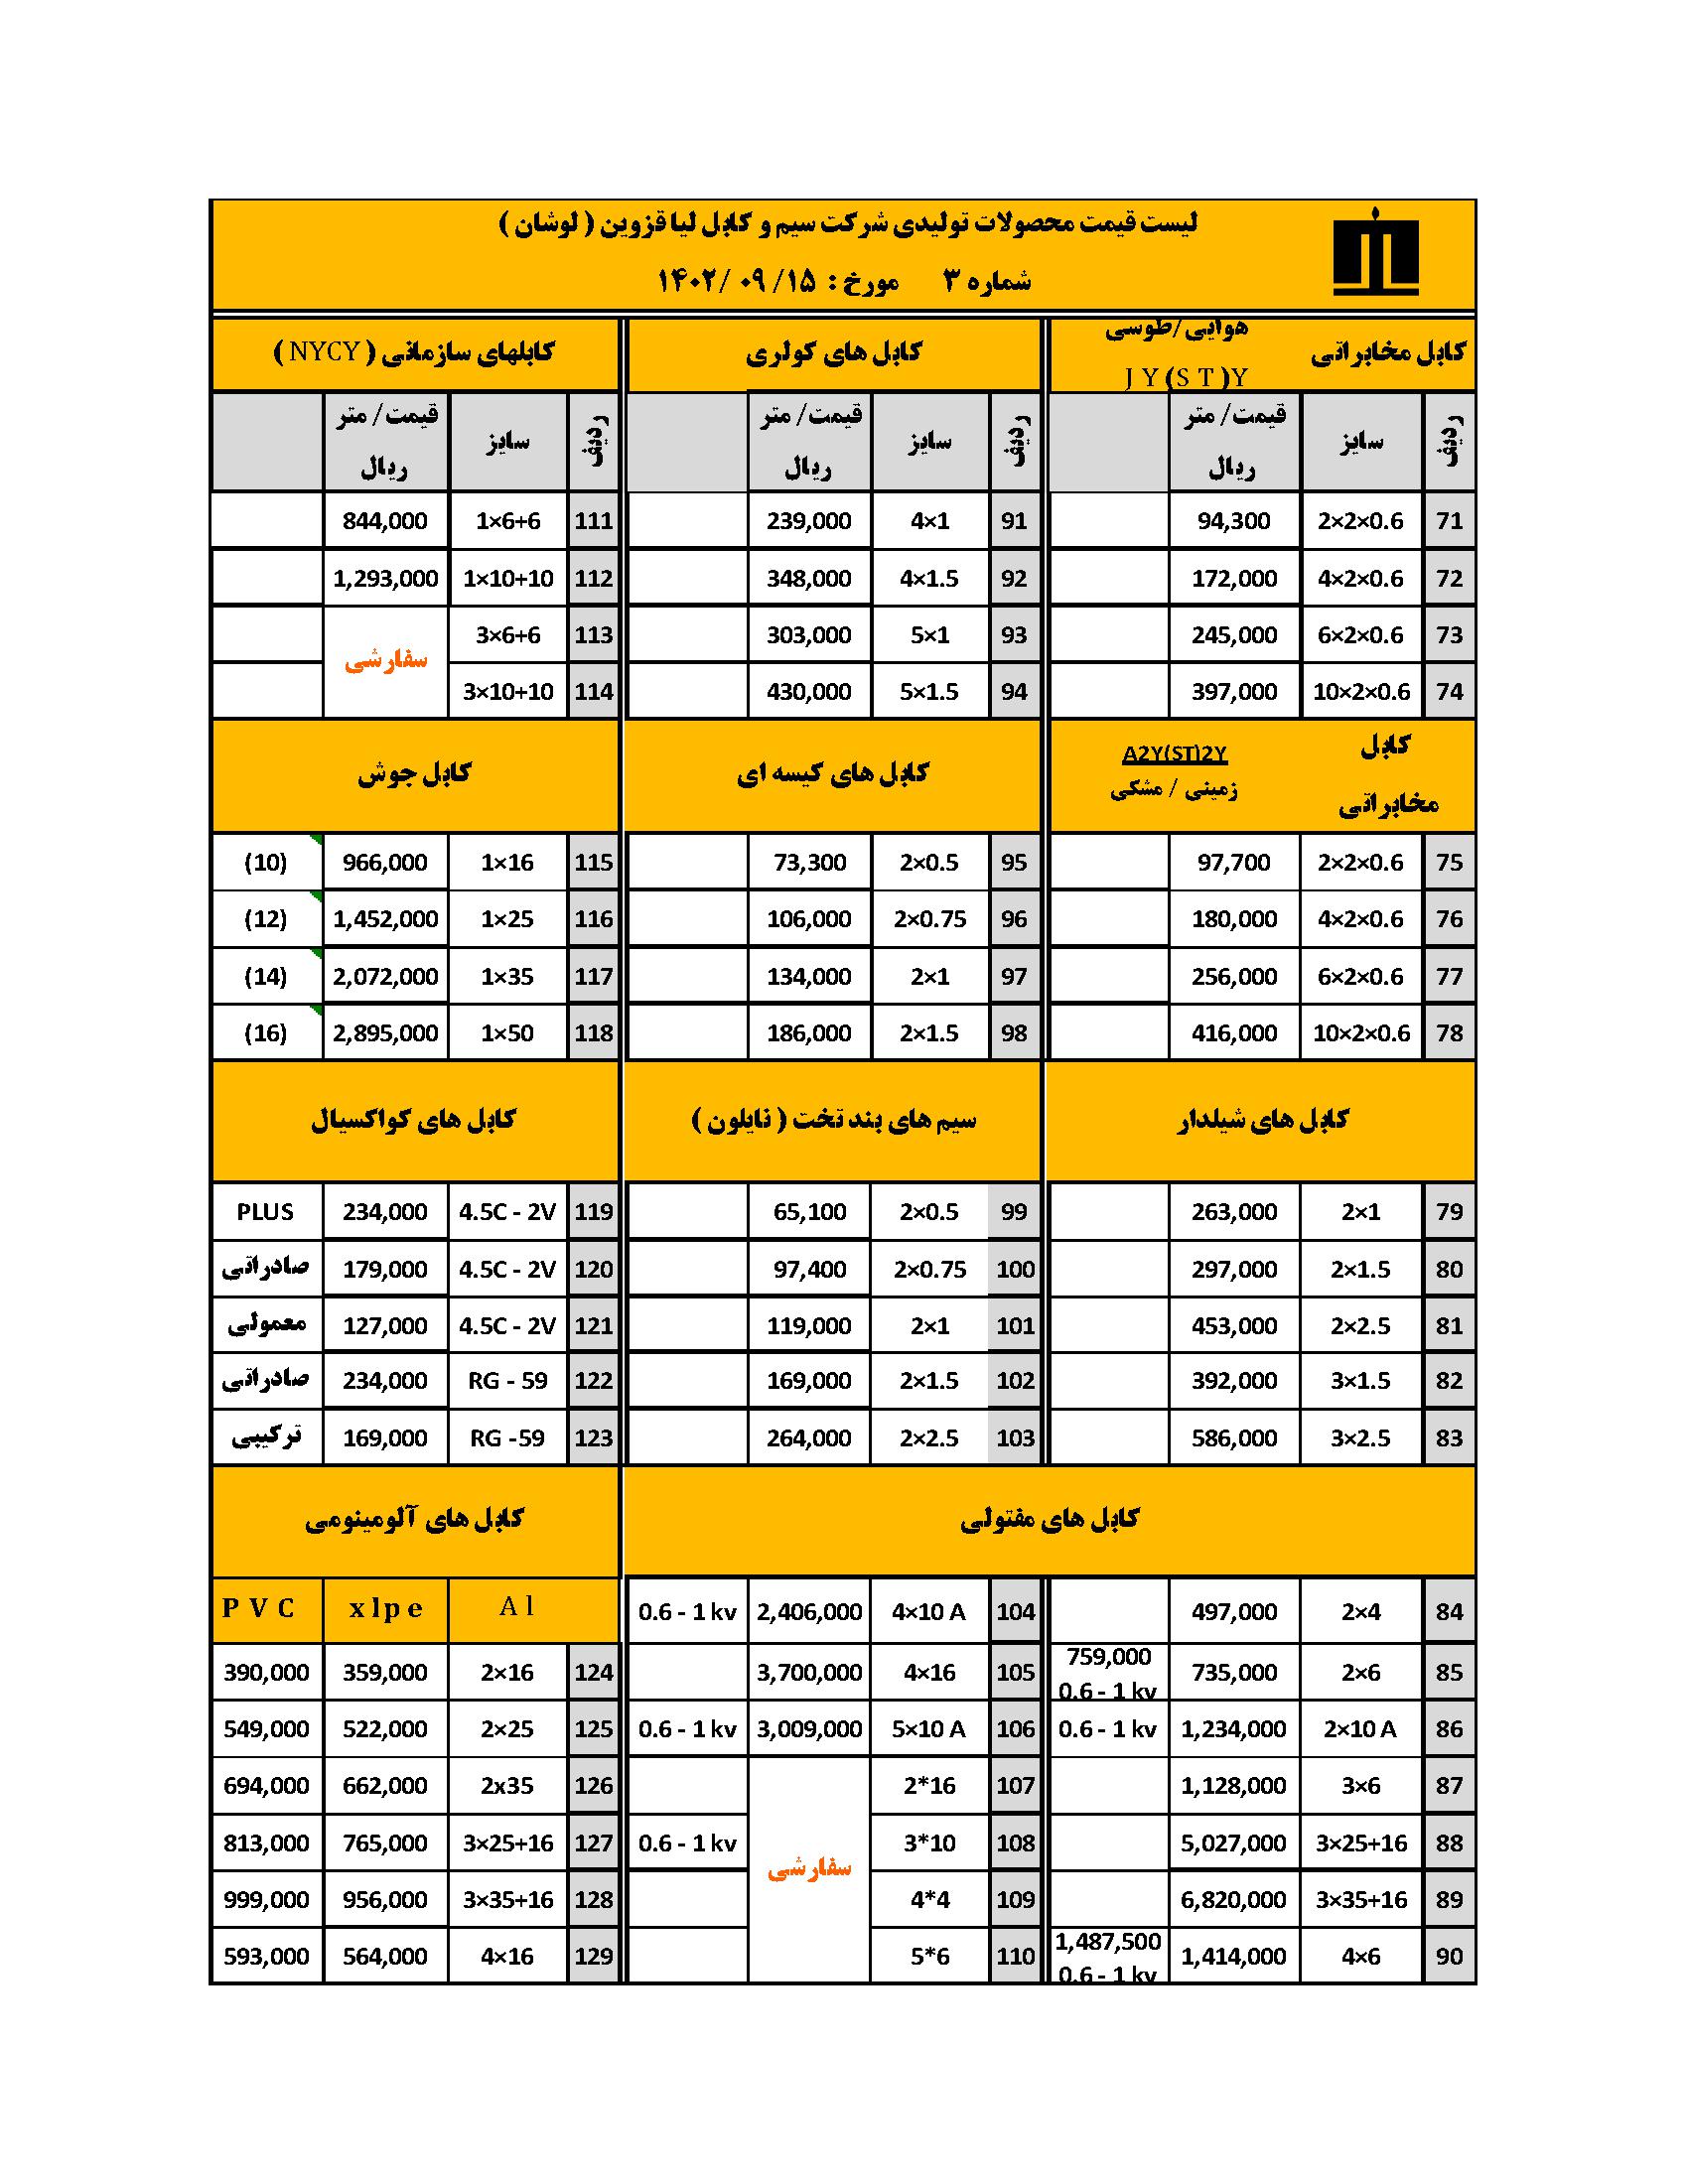 لیست قیمت سیم و کابل لوشان - لیا قزوین